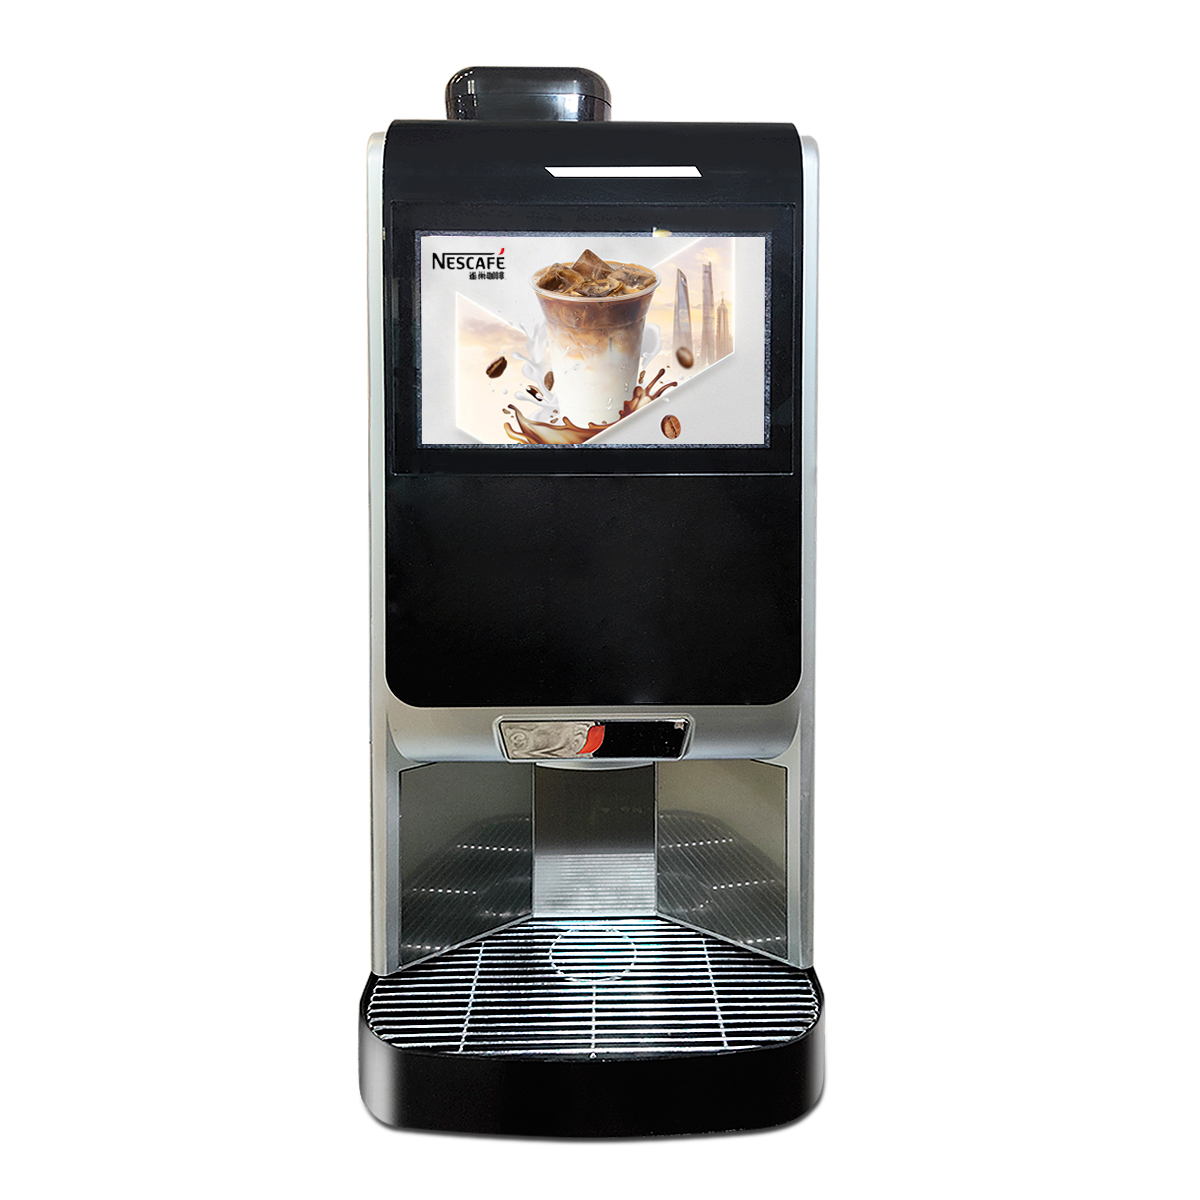 雀巢-ipilot e2s全自动咖啡、热饮机